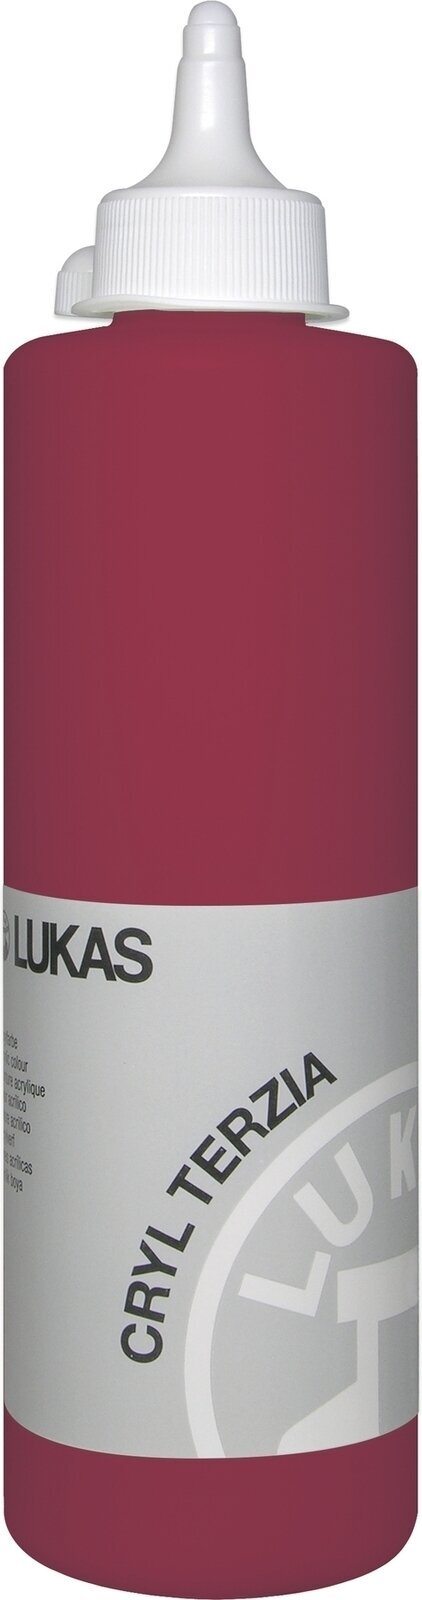 Peinture acrylique Lukas Cryl Terzia Acrylic Paint Plastic Bottle Peinture acrylique Alizarin Crimson 500 ml 1 pc